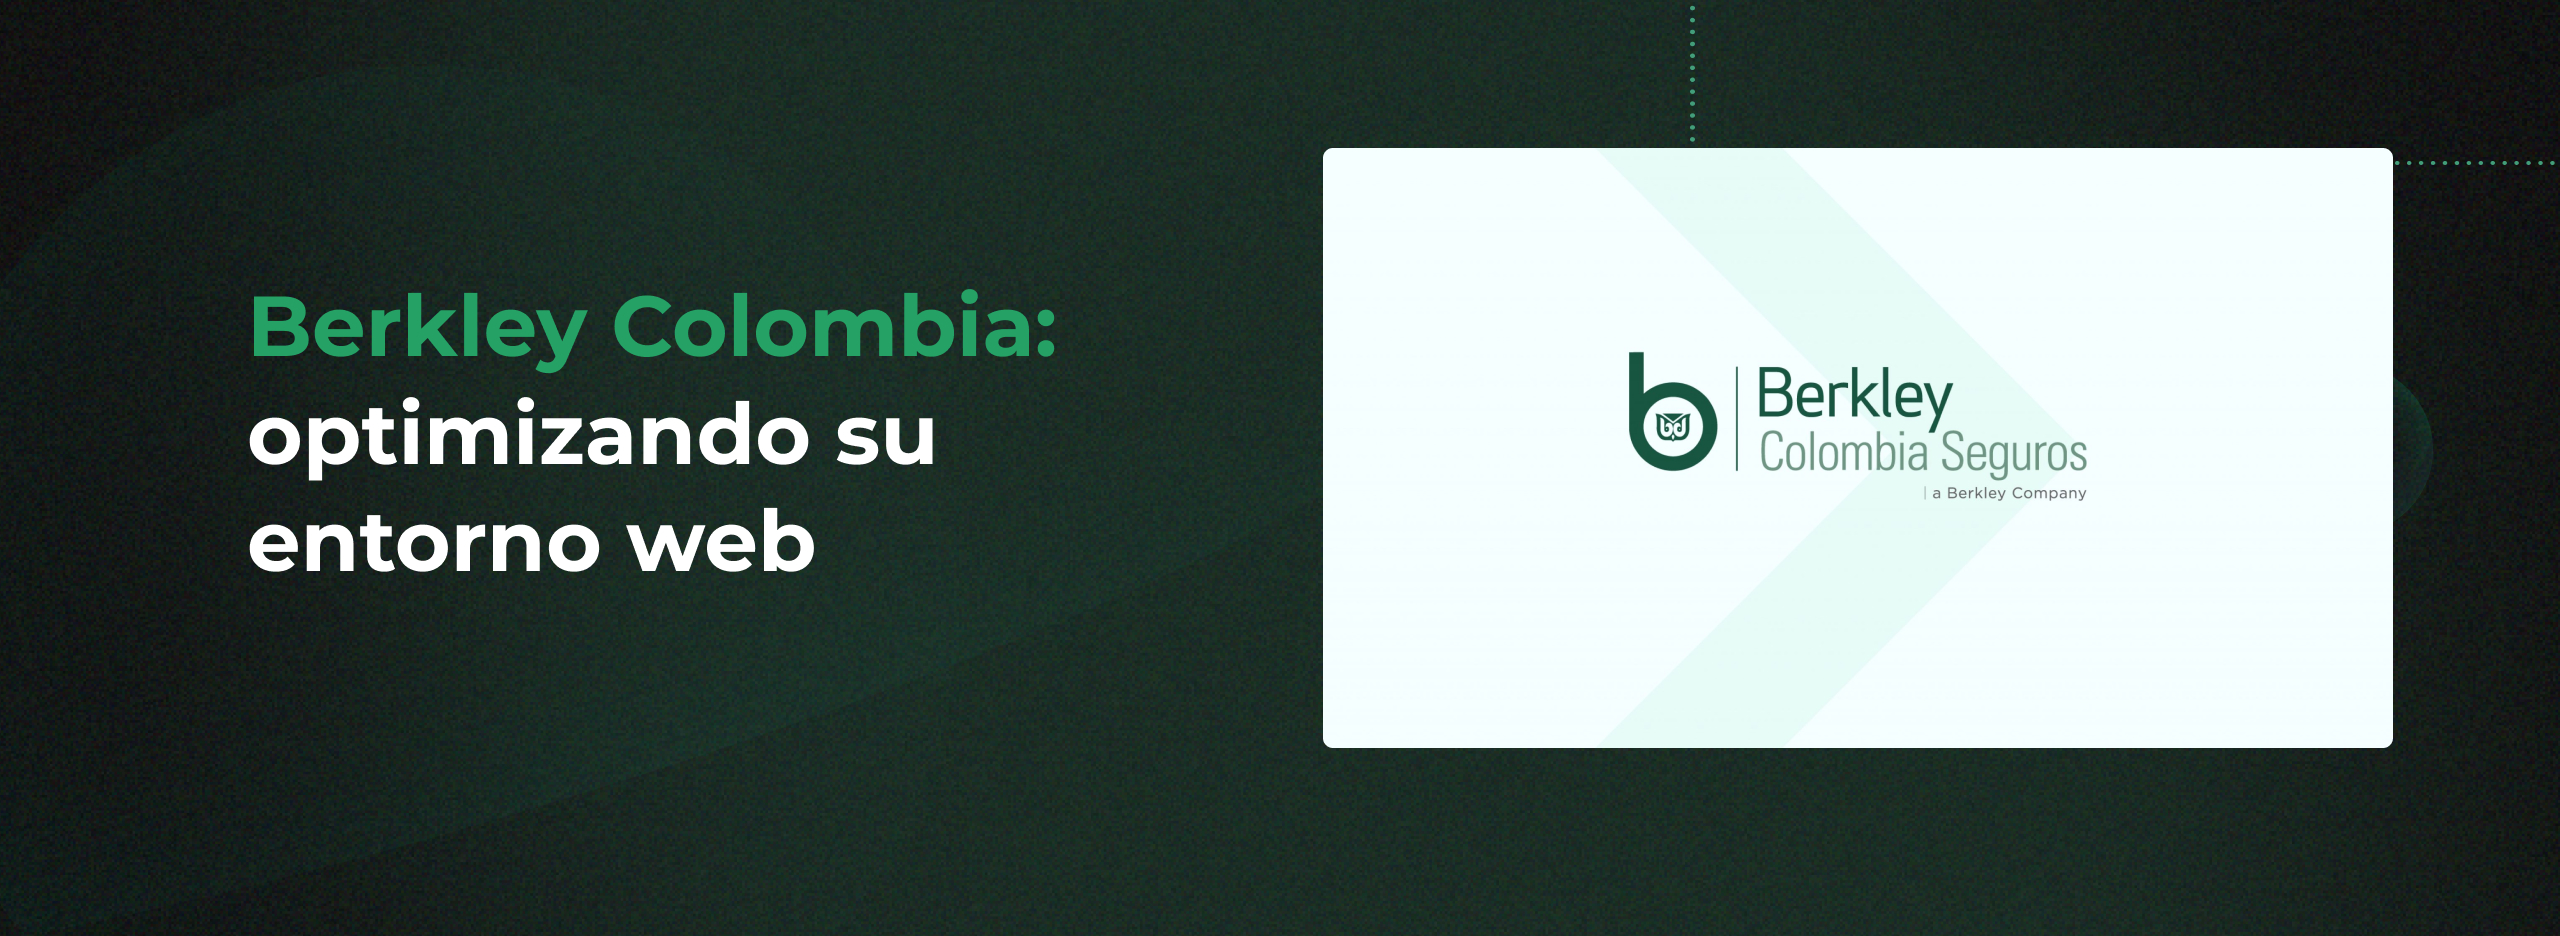 Berkley Colombia: optimizando su entorno web